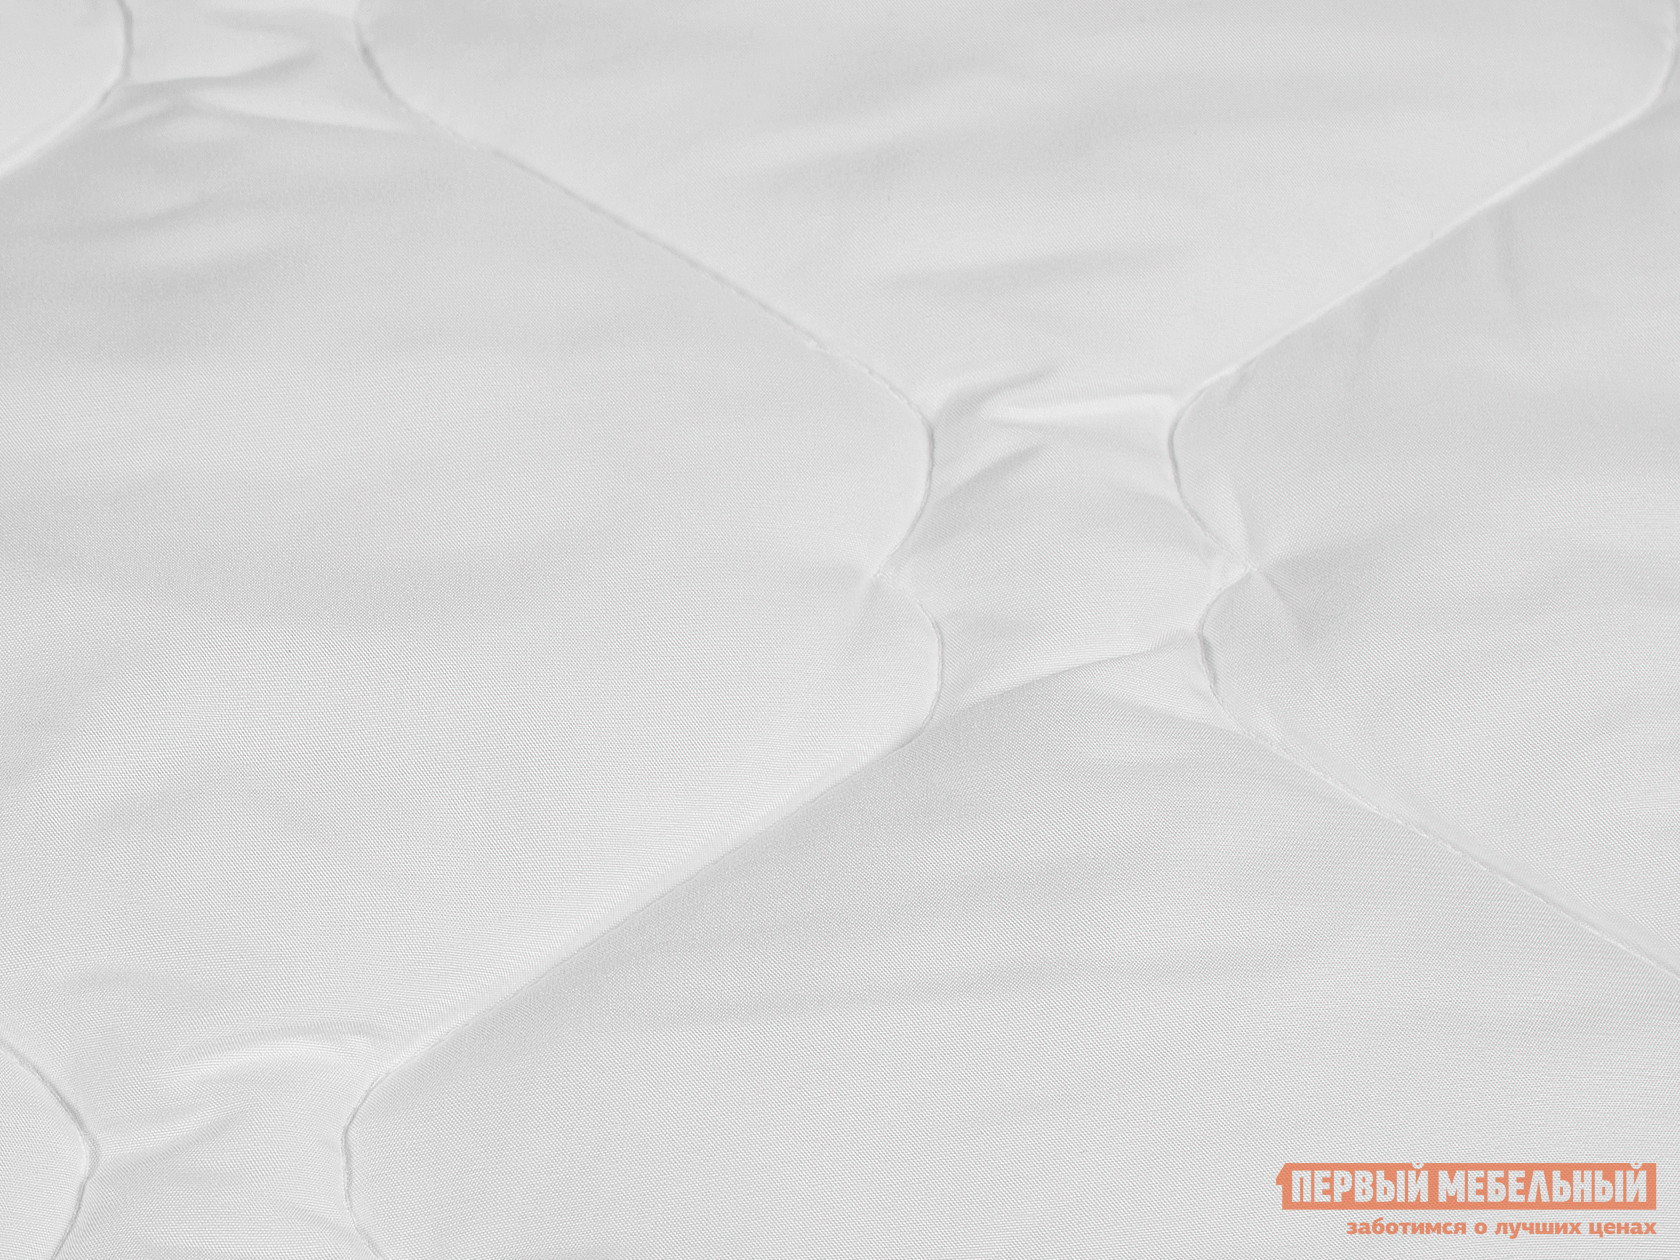 Одеяло  Одеяло "Бамбук" Белый, 1400 х 2050 мм от Первый Мебельный